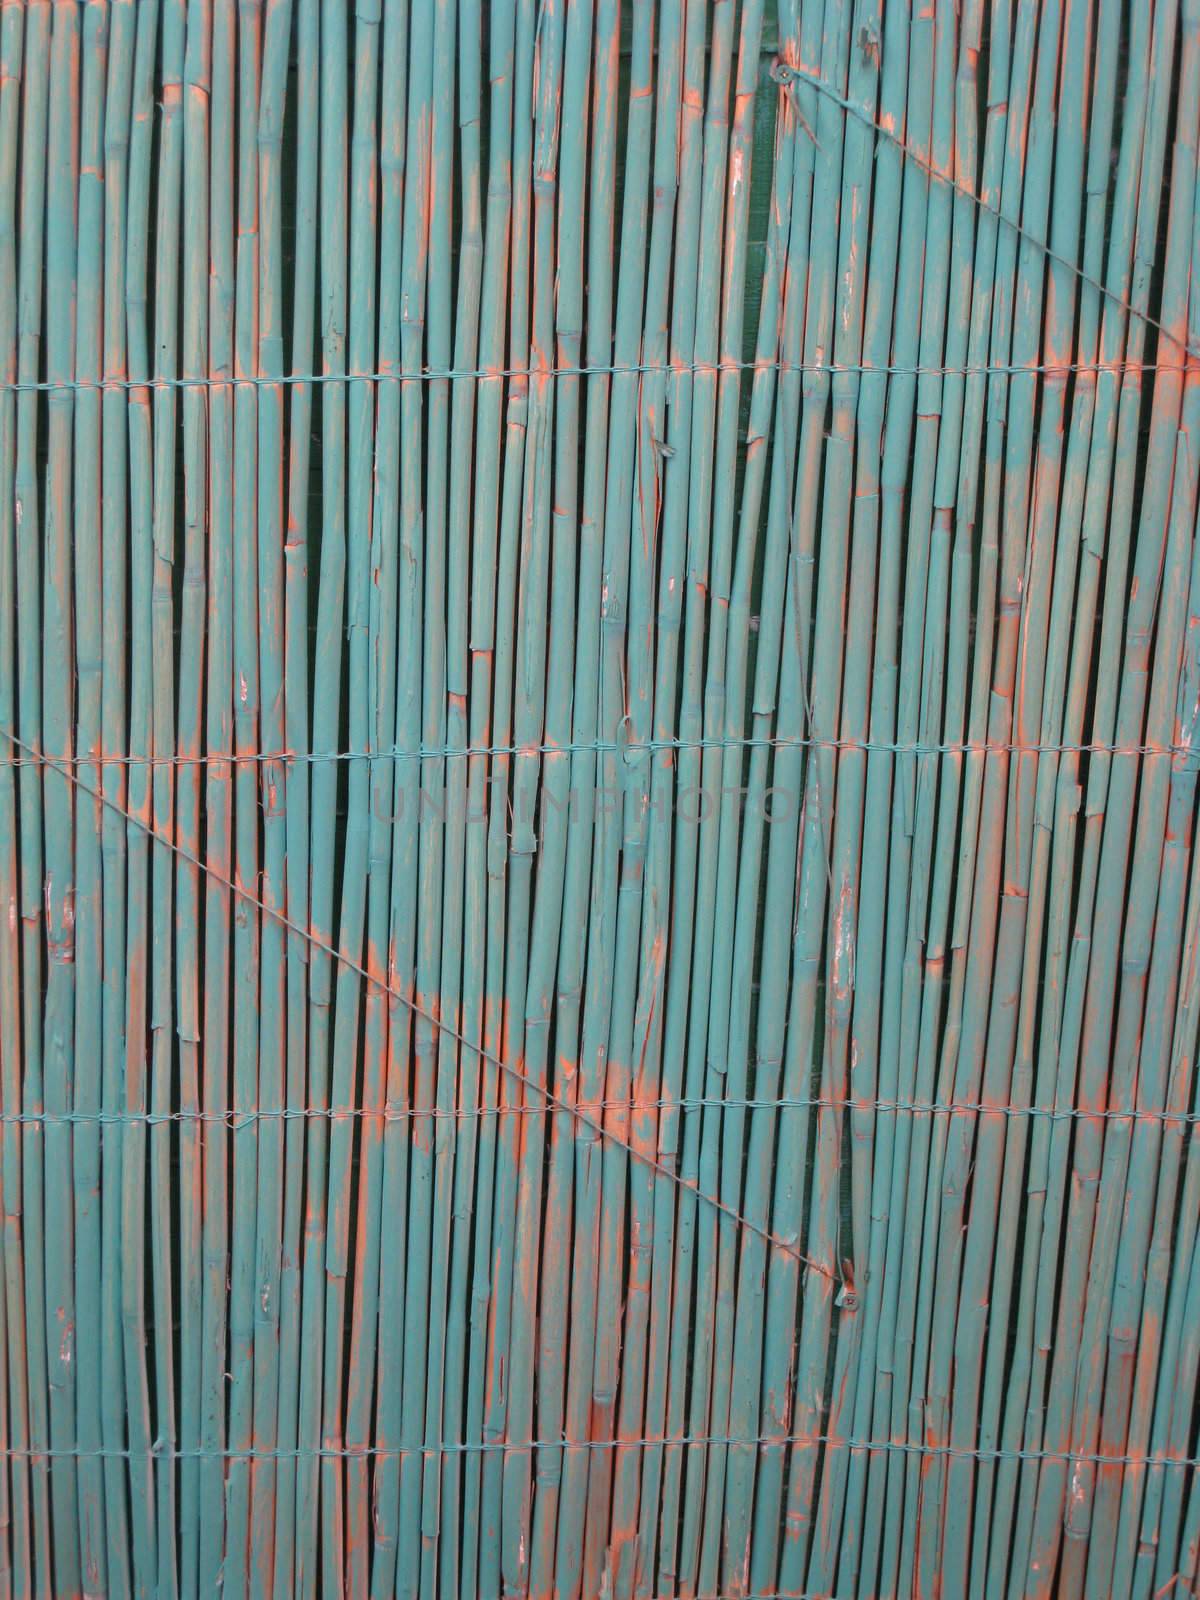 Detail of a reed matt